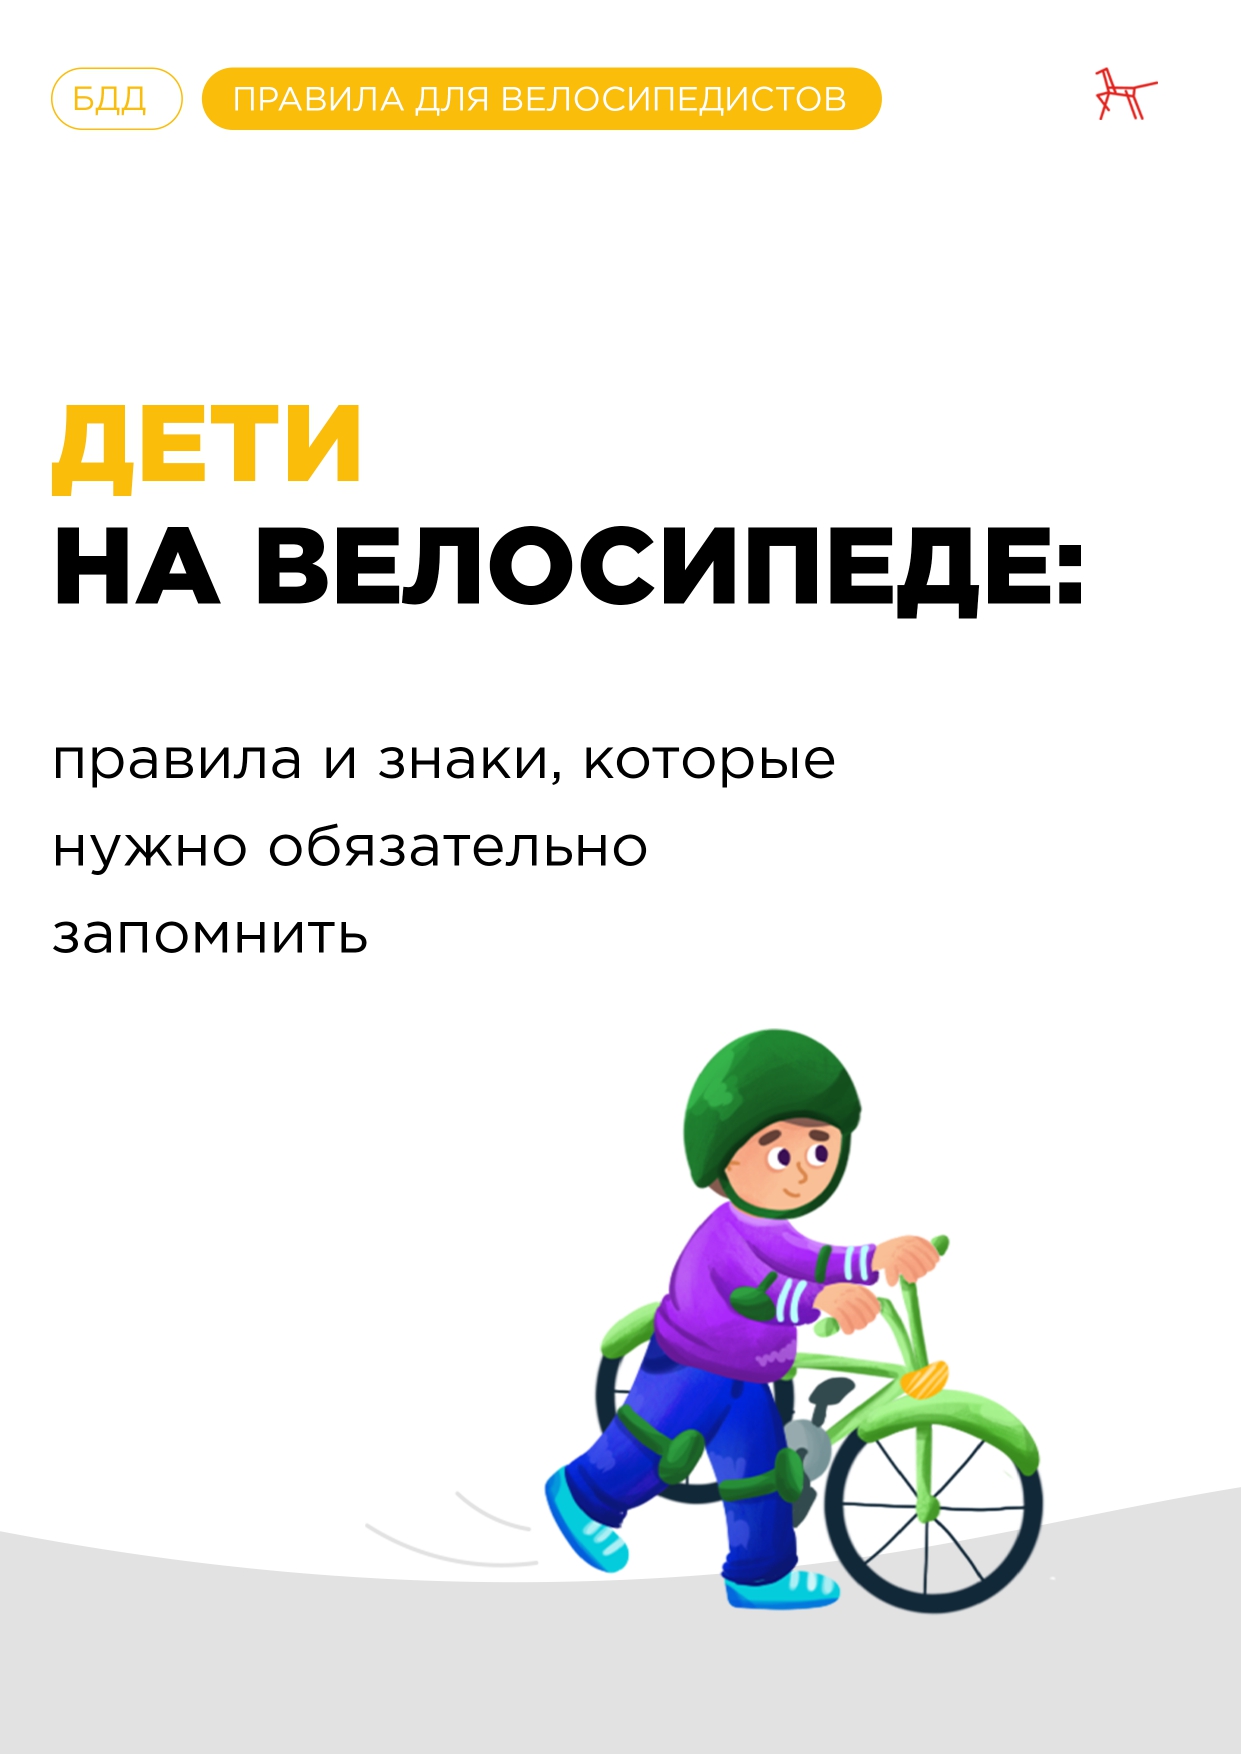 Deti na velosipede Pamyatka page 0001